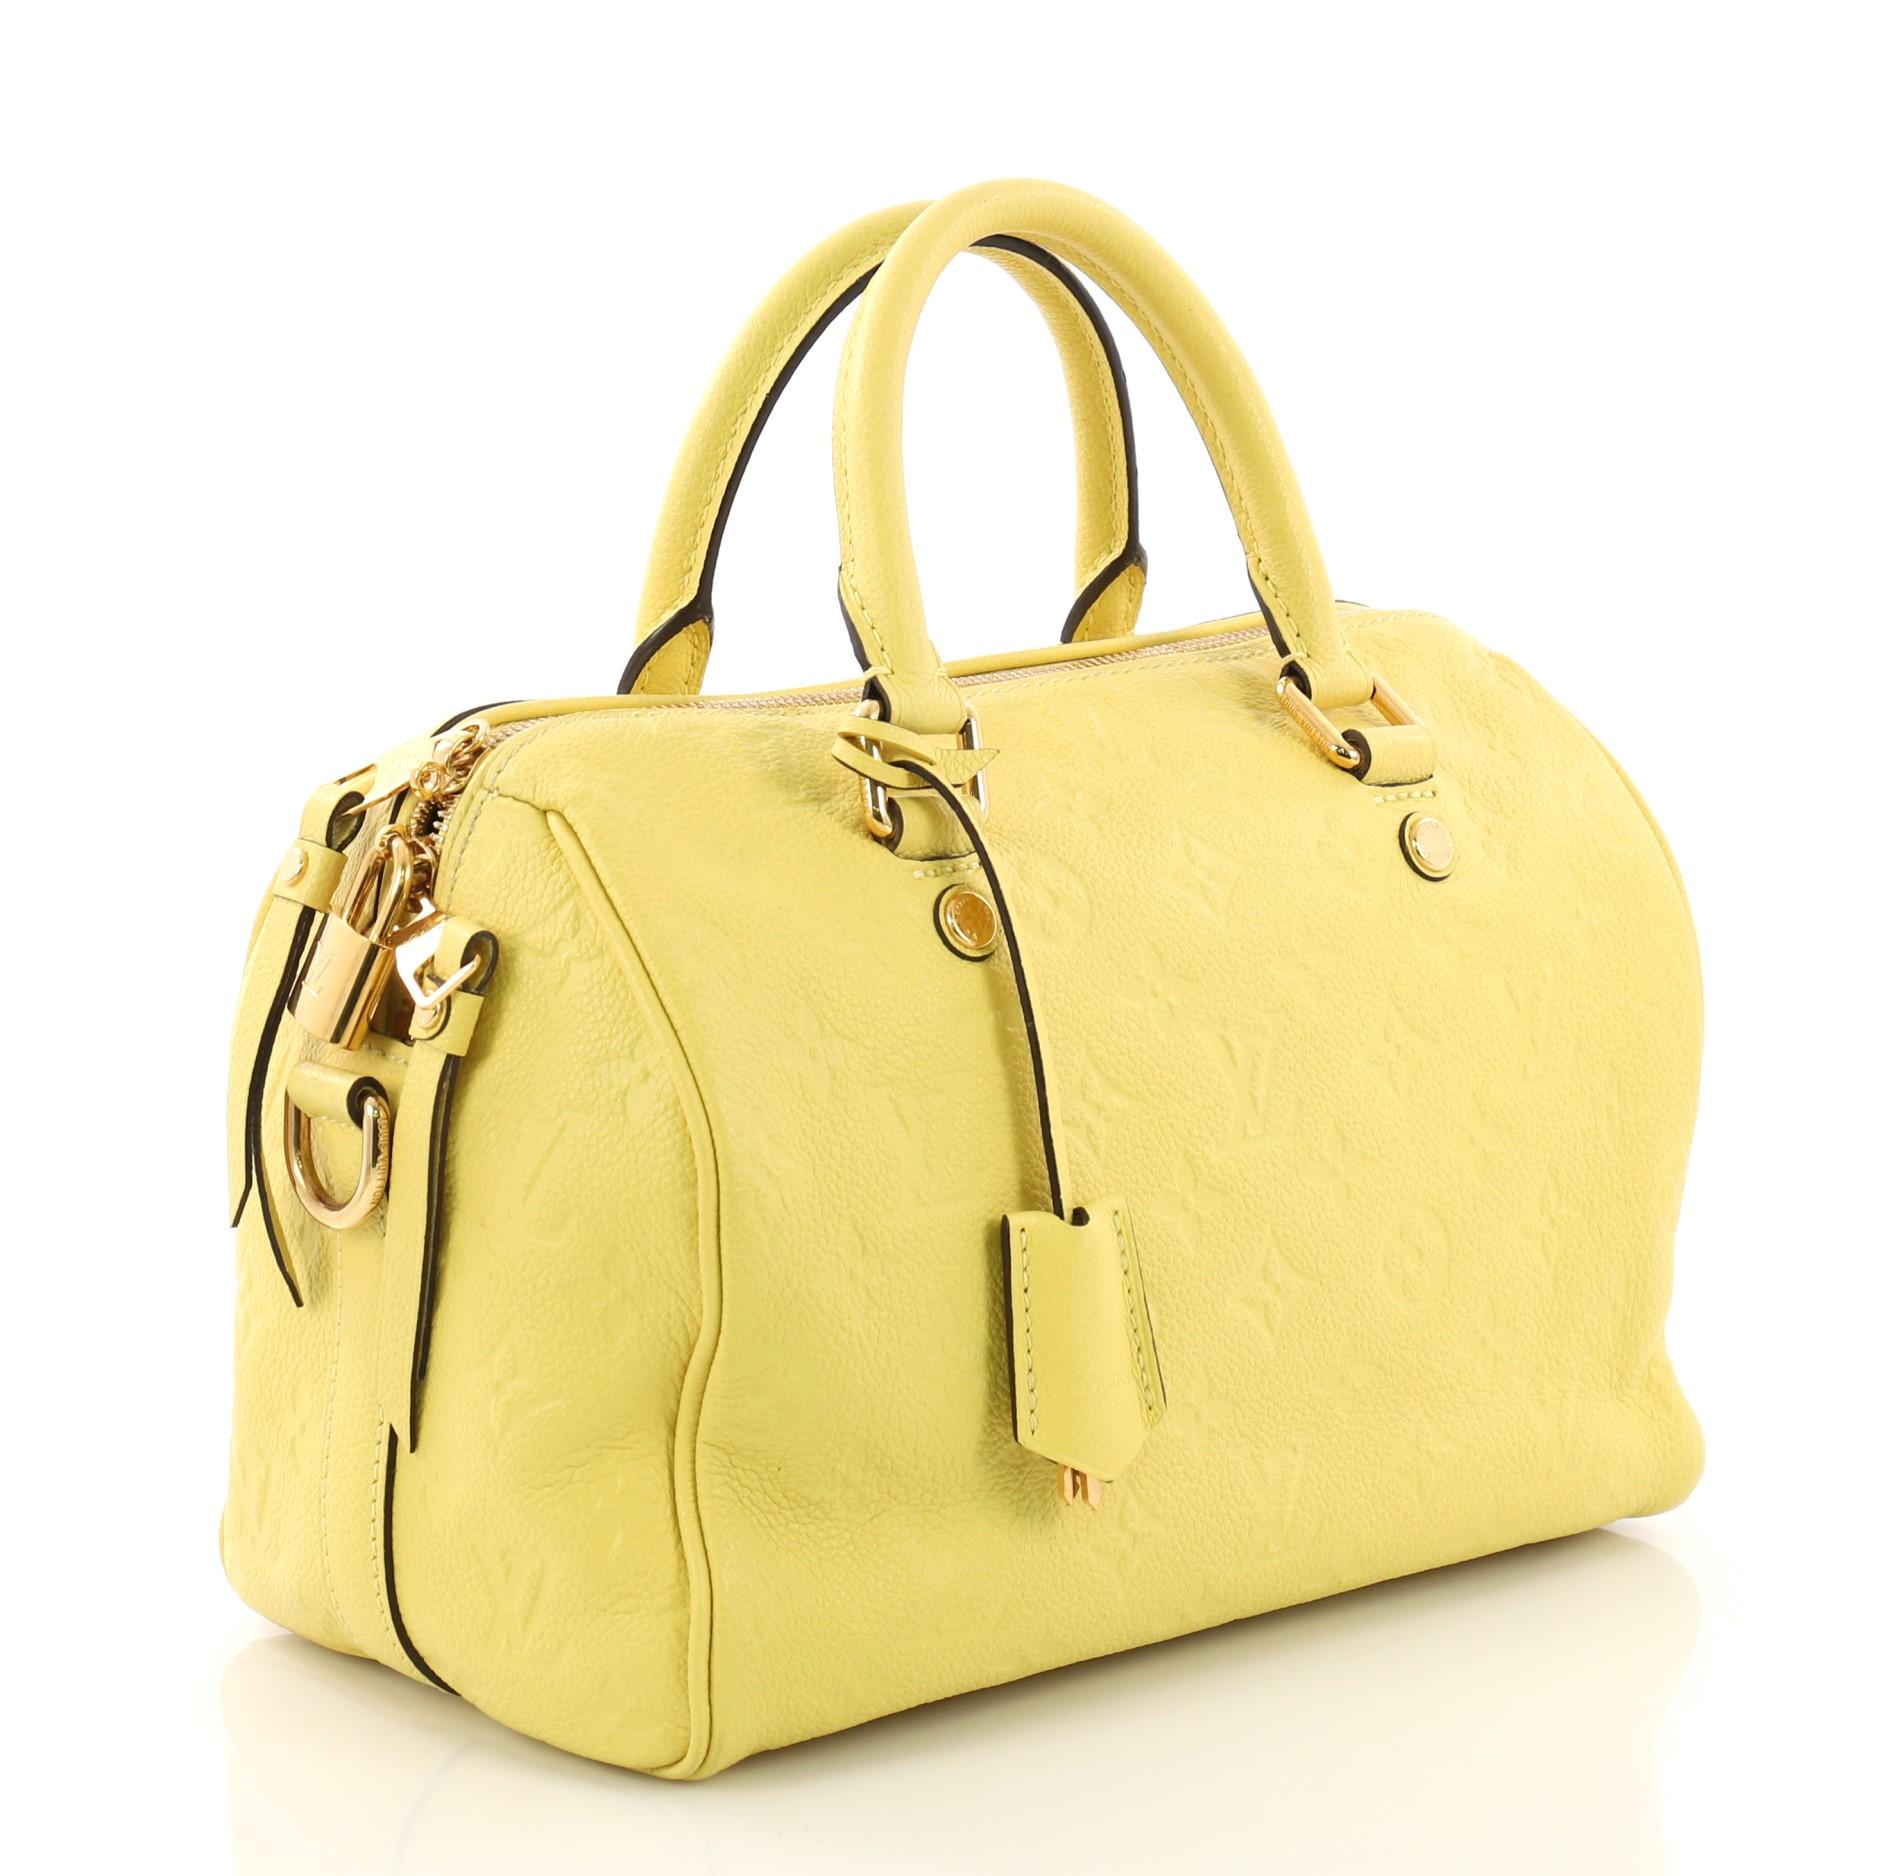 Louis Vuitton Speedy Bandouliere Bag Monogram Empreinte Leather 25 (Gelb)